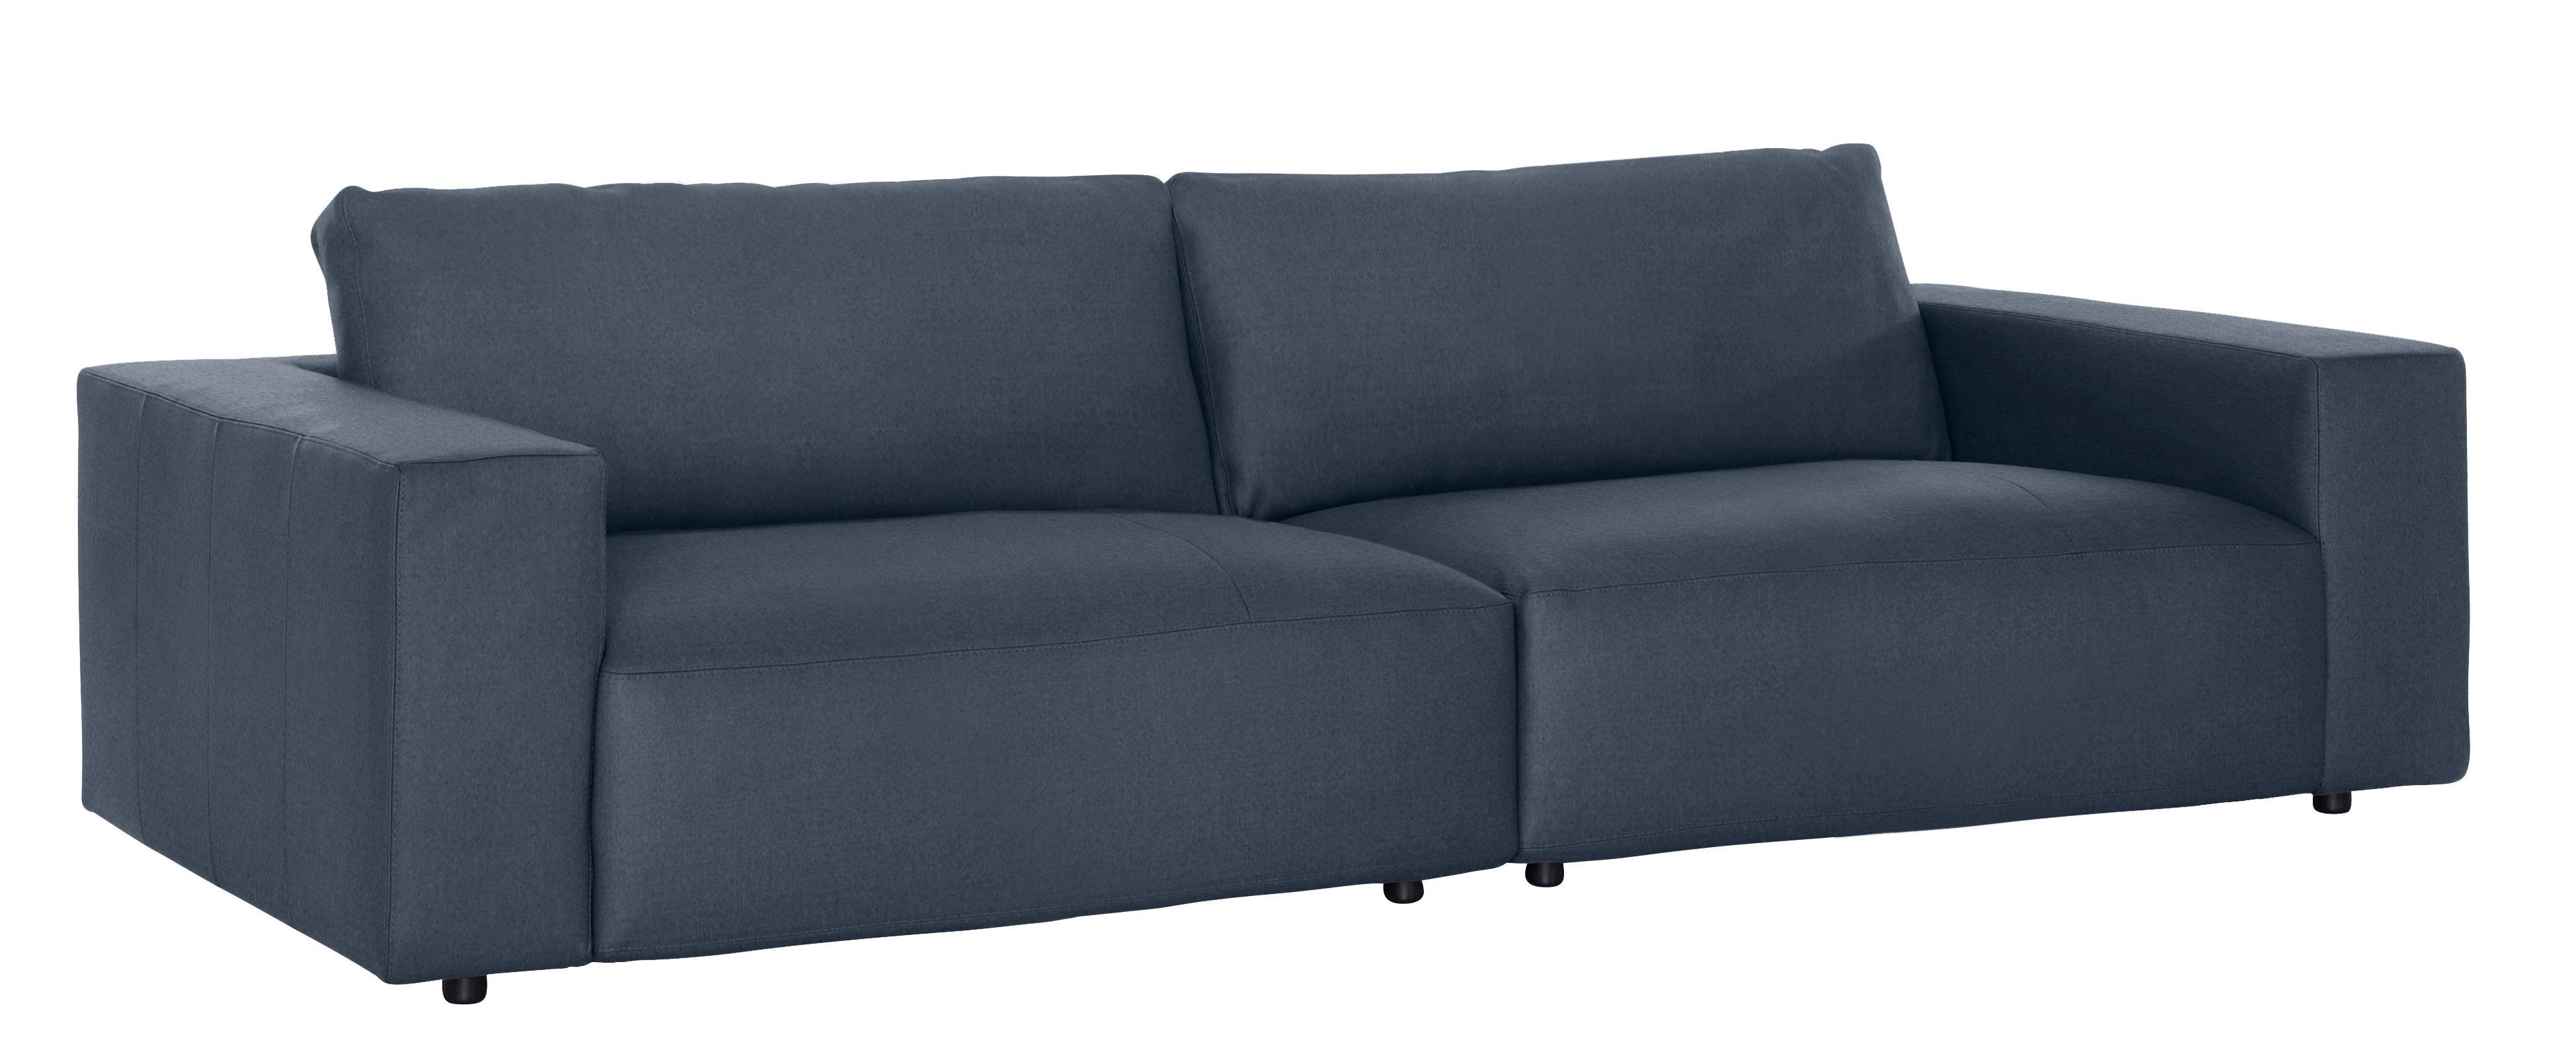 GALLERY M Musterring LUCIA, 4 vielen Qualitäten und in by 3-Sitzer Big-Sofa branded Nähten, unterschiedlichen